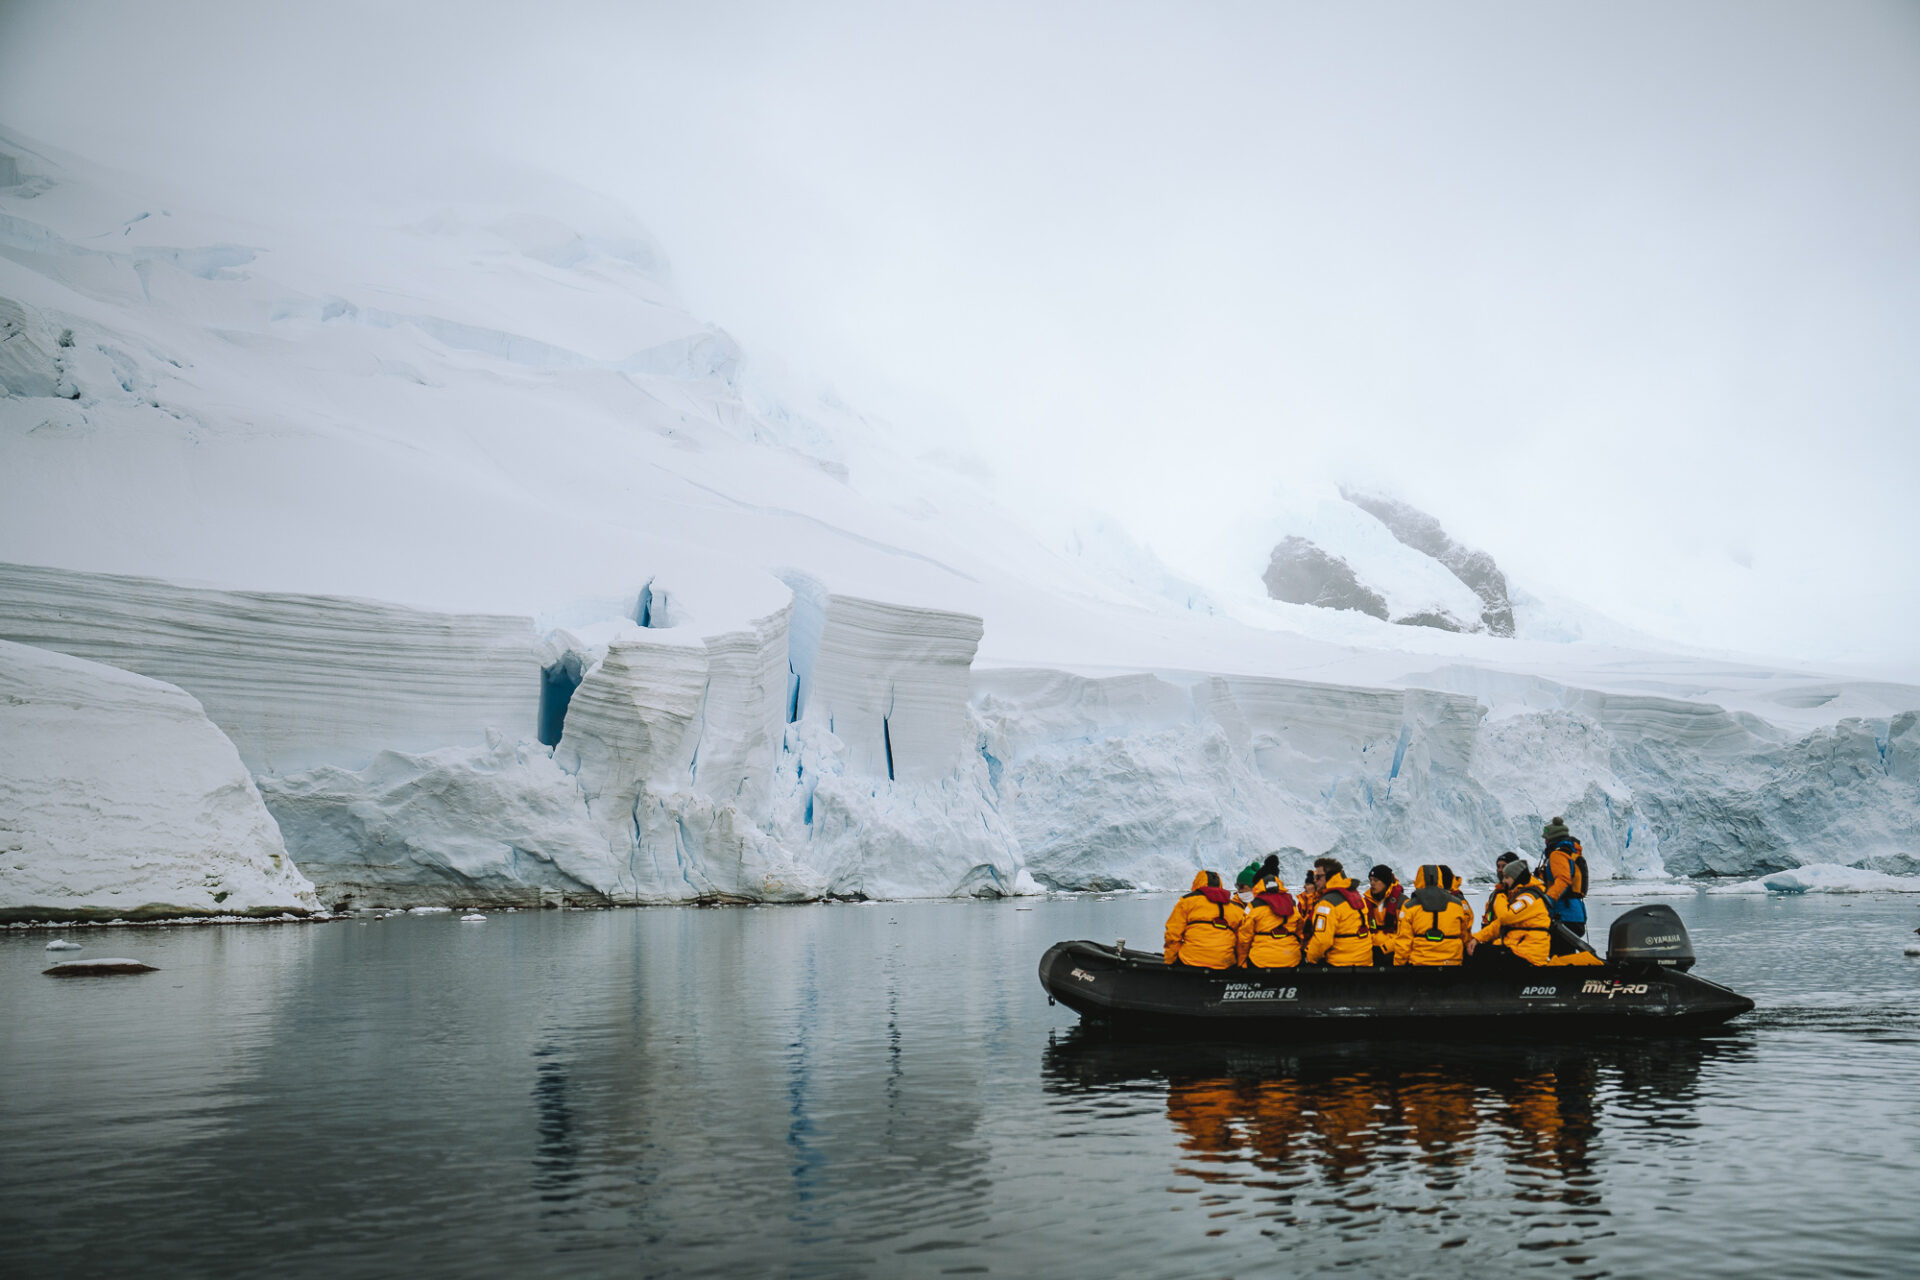 Appreciating the magnificent view of Antarctica